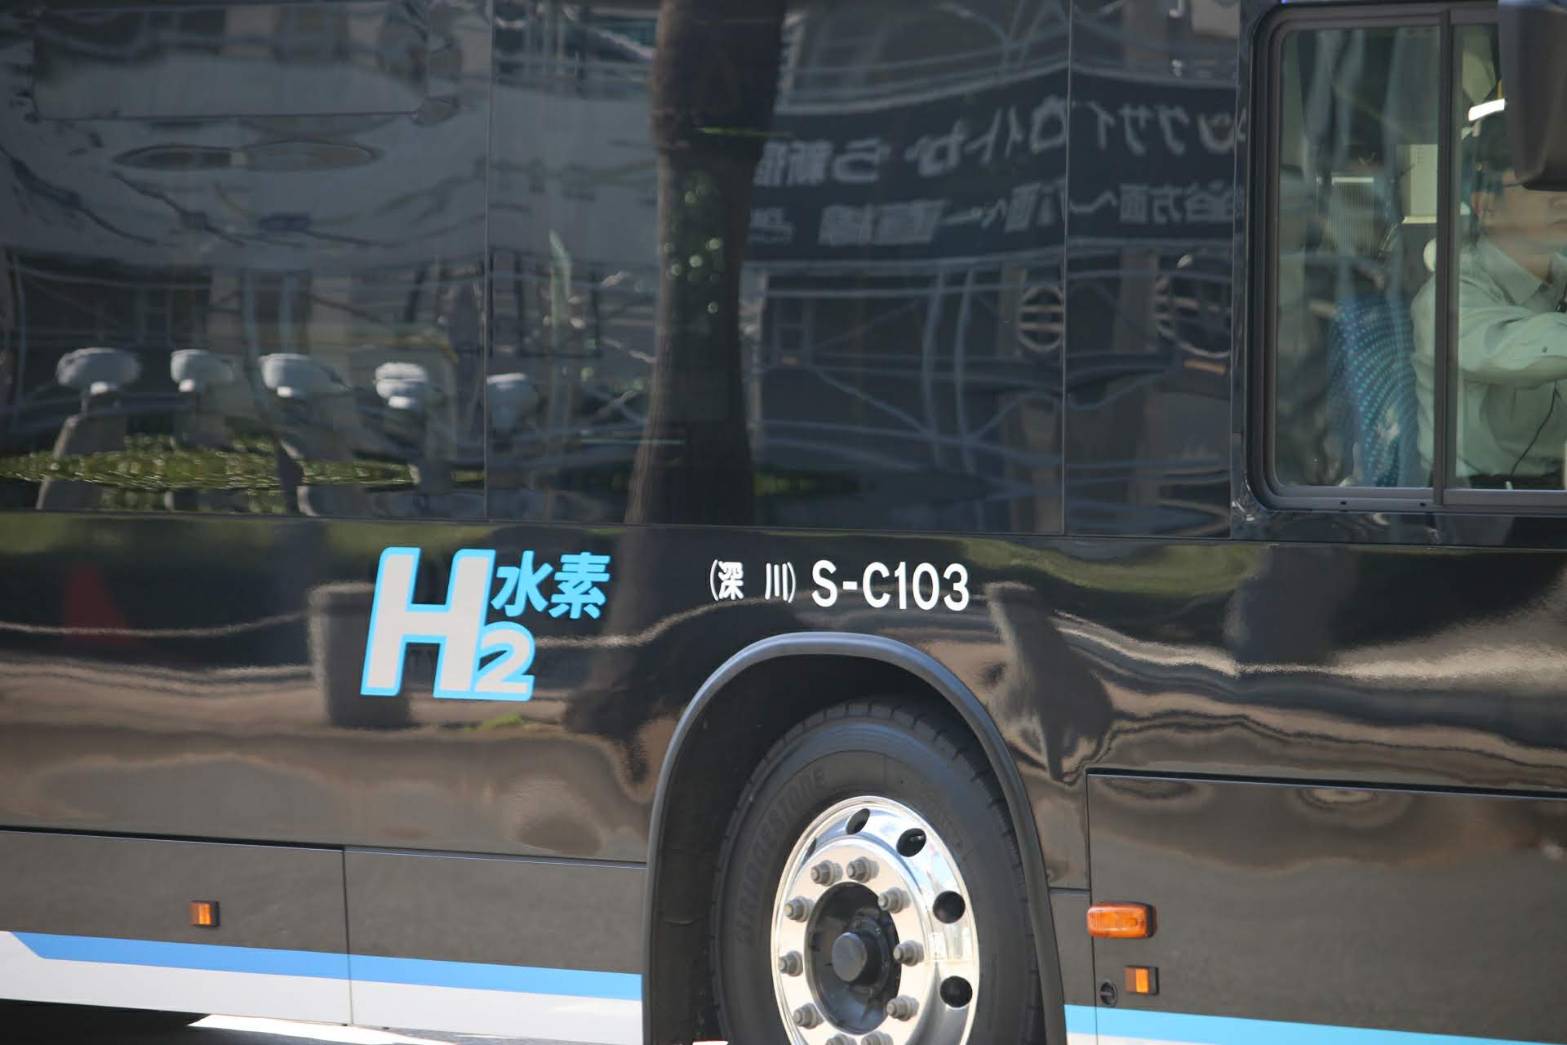 燃料電池バスのロゴが「H2 水素」に | 都営バス資料館